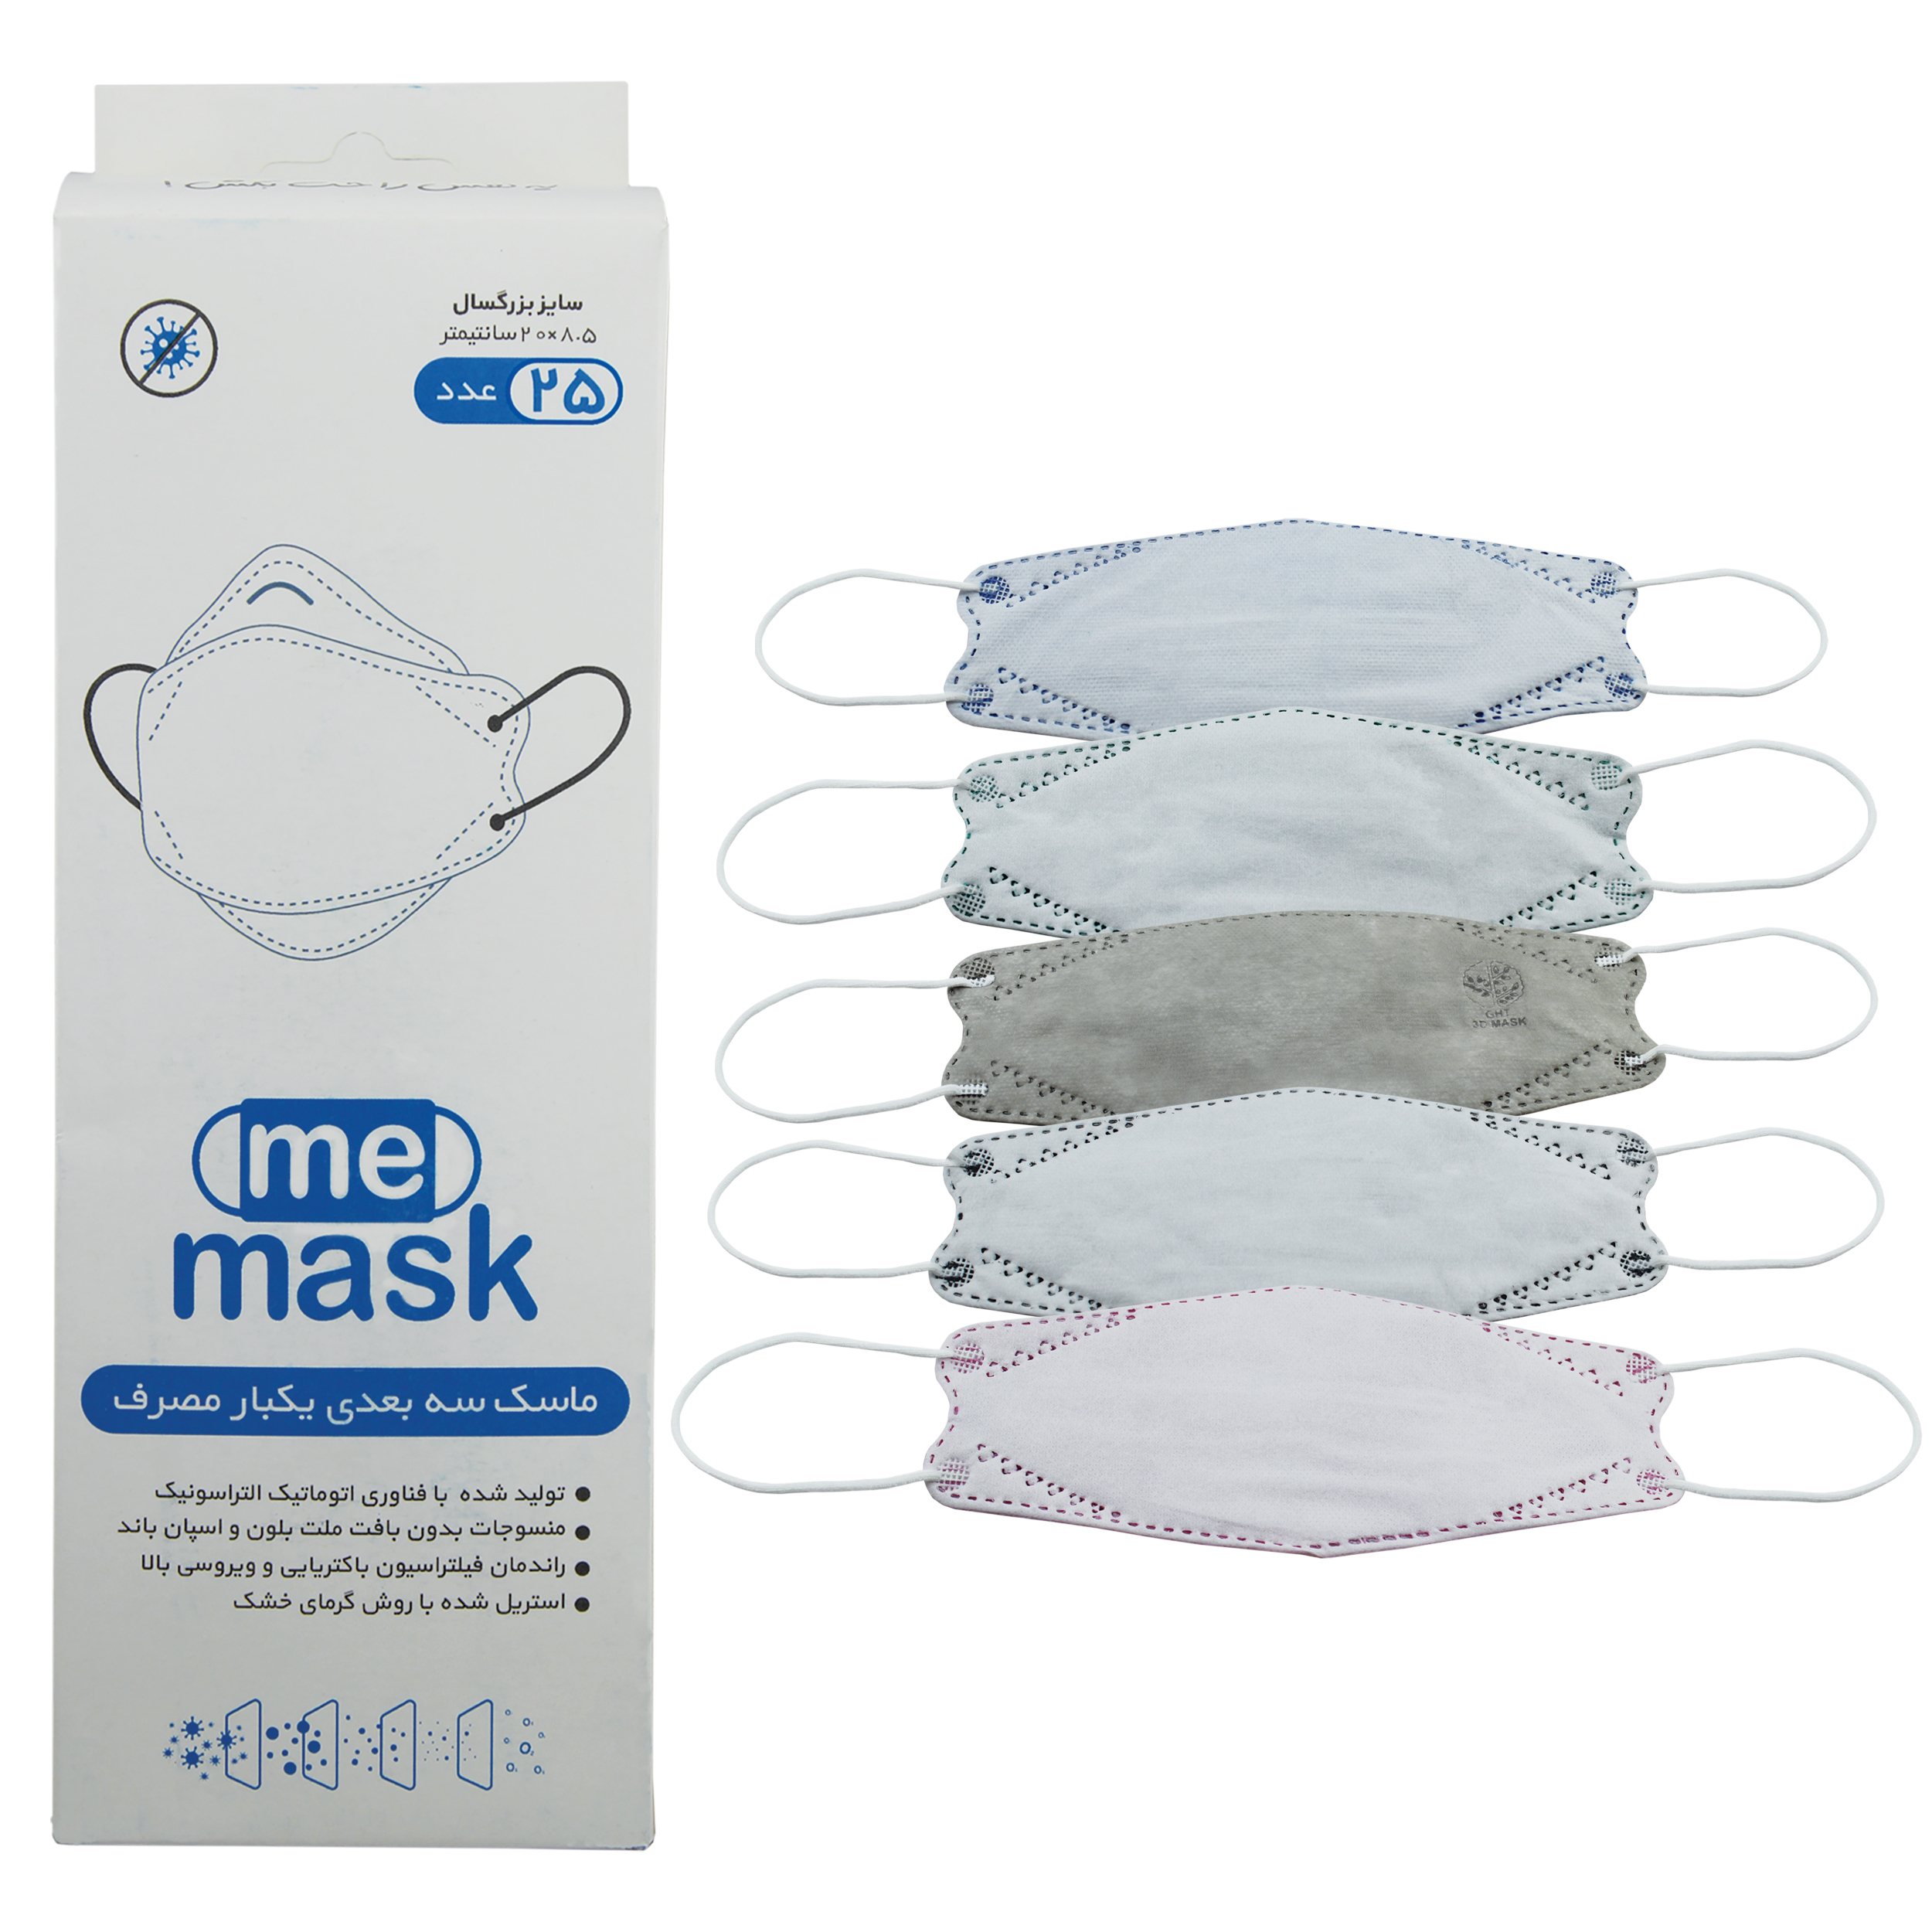 ماسک تنفسی می ماسک مدل سه بعدی رنگین کمان بسته 25 عددی